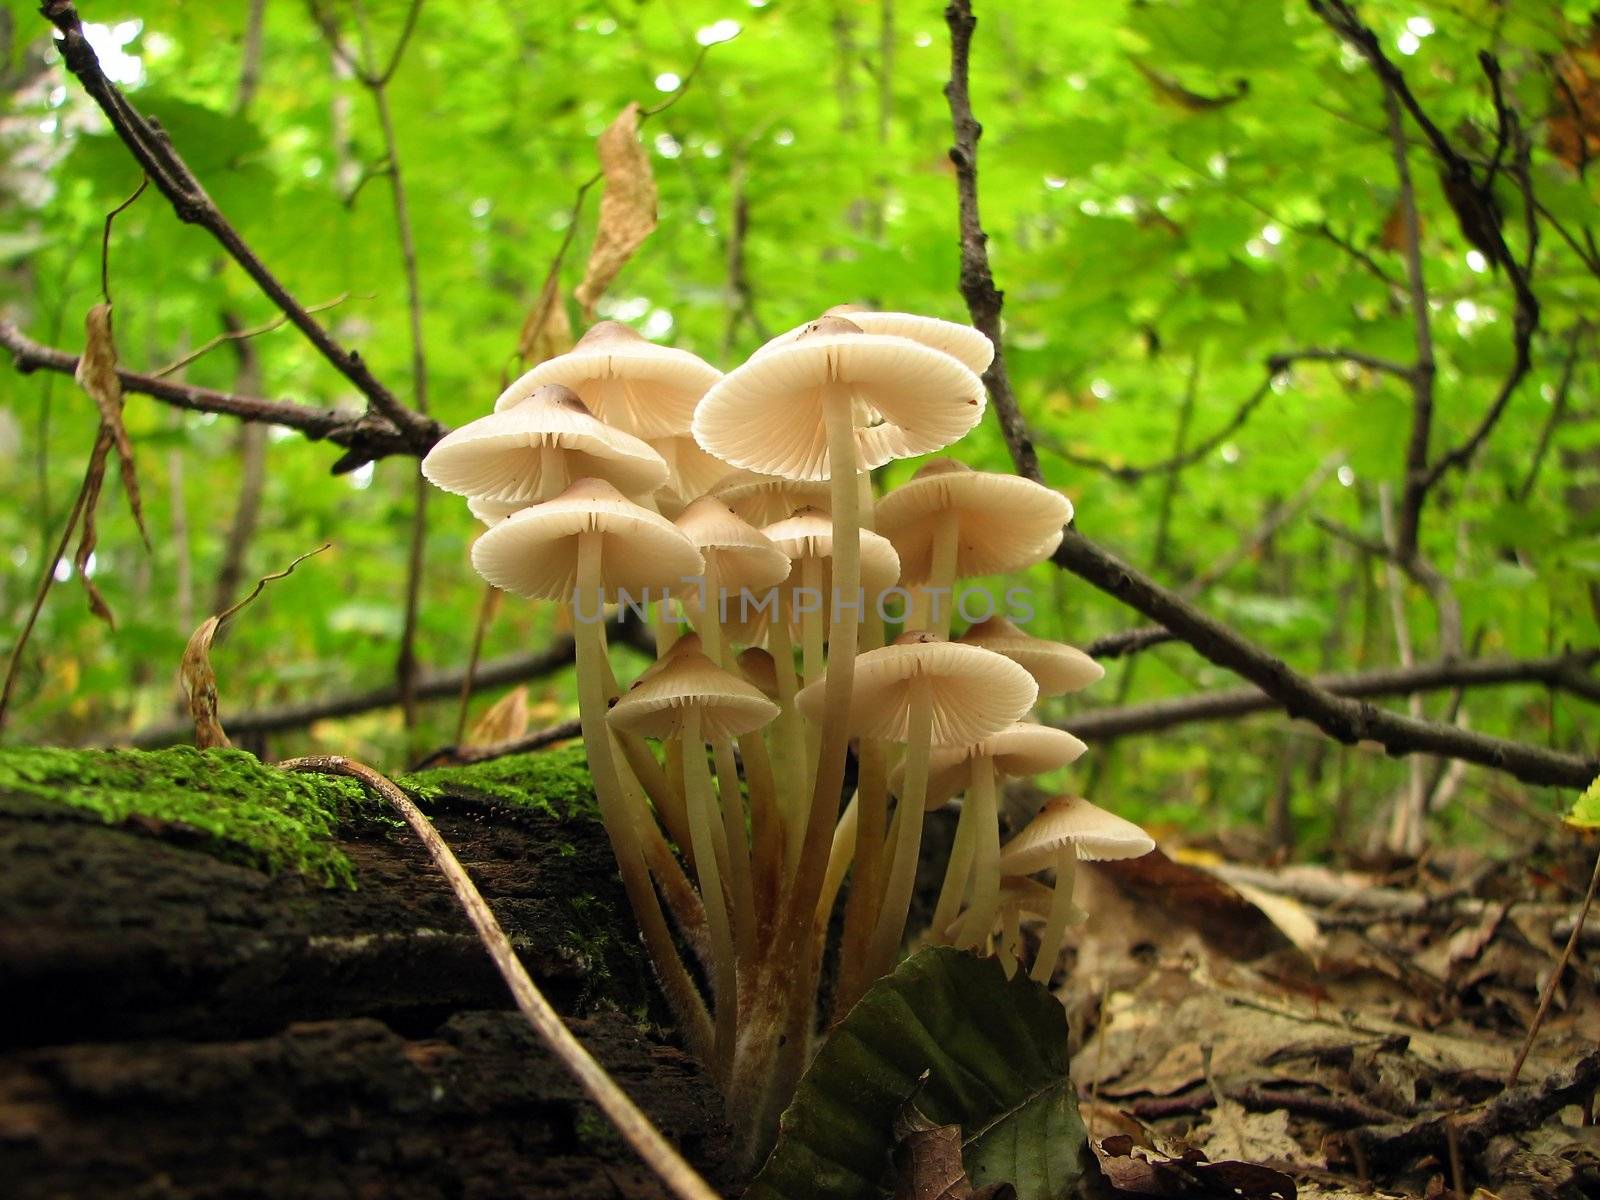 Mushroom family in the sunlight by anikasalsera